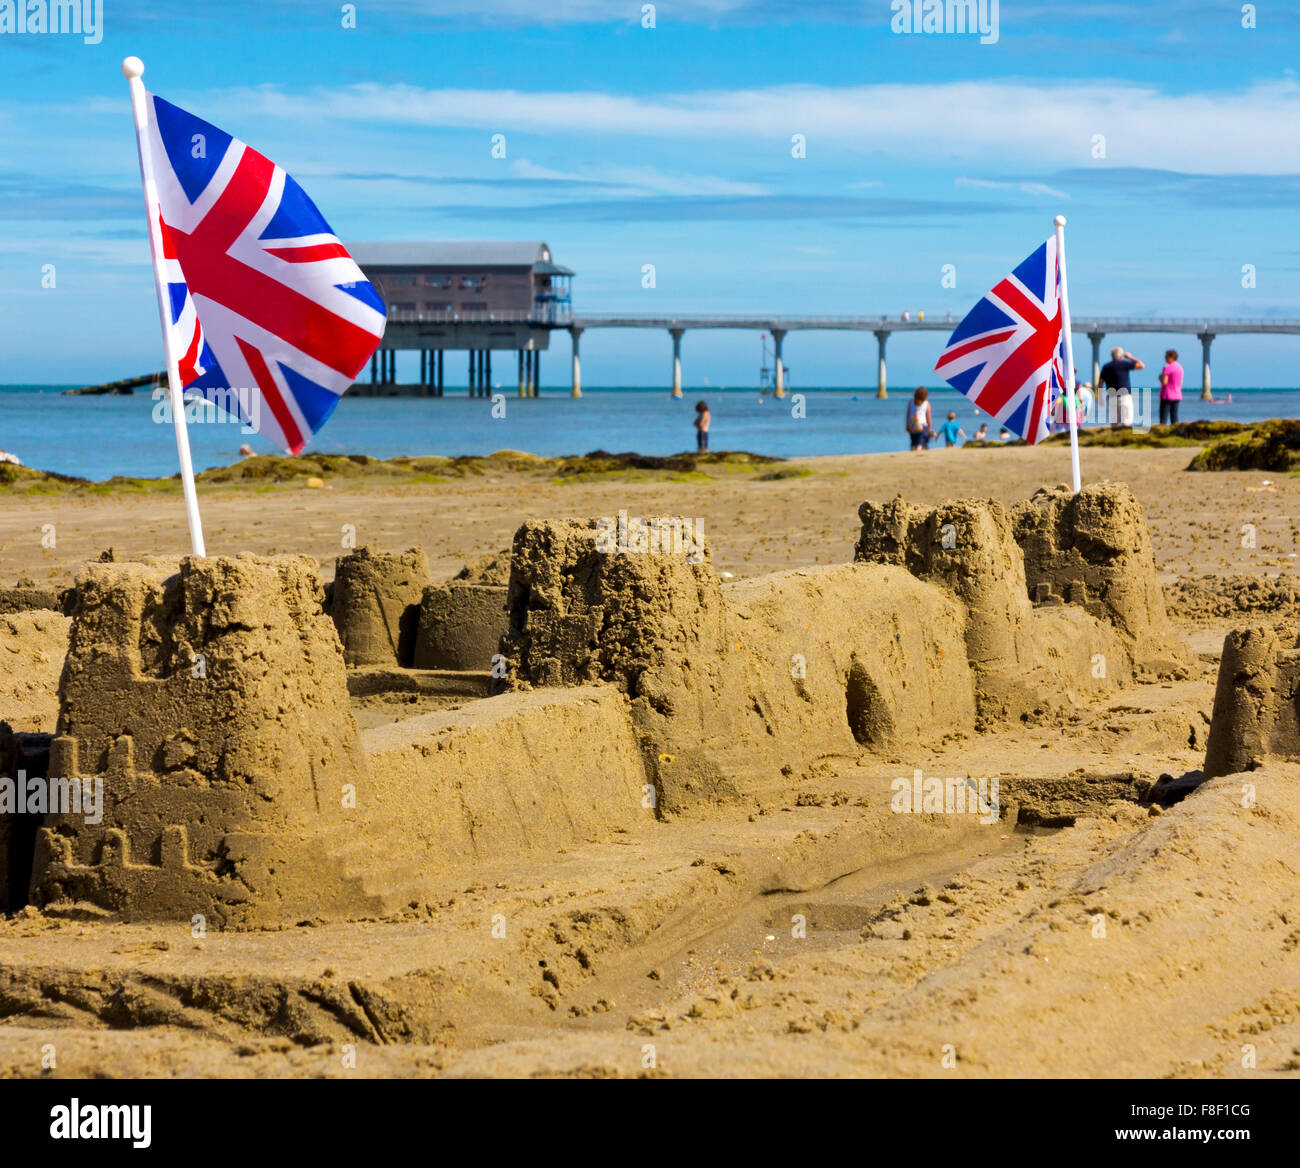 Castillo de arena tradicionales británicos con banderas de la Union Jack en una playa en verano en Bembridge Isle of Wight Inglaterra Foto de stock